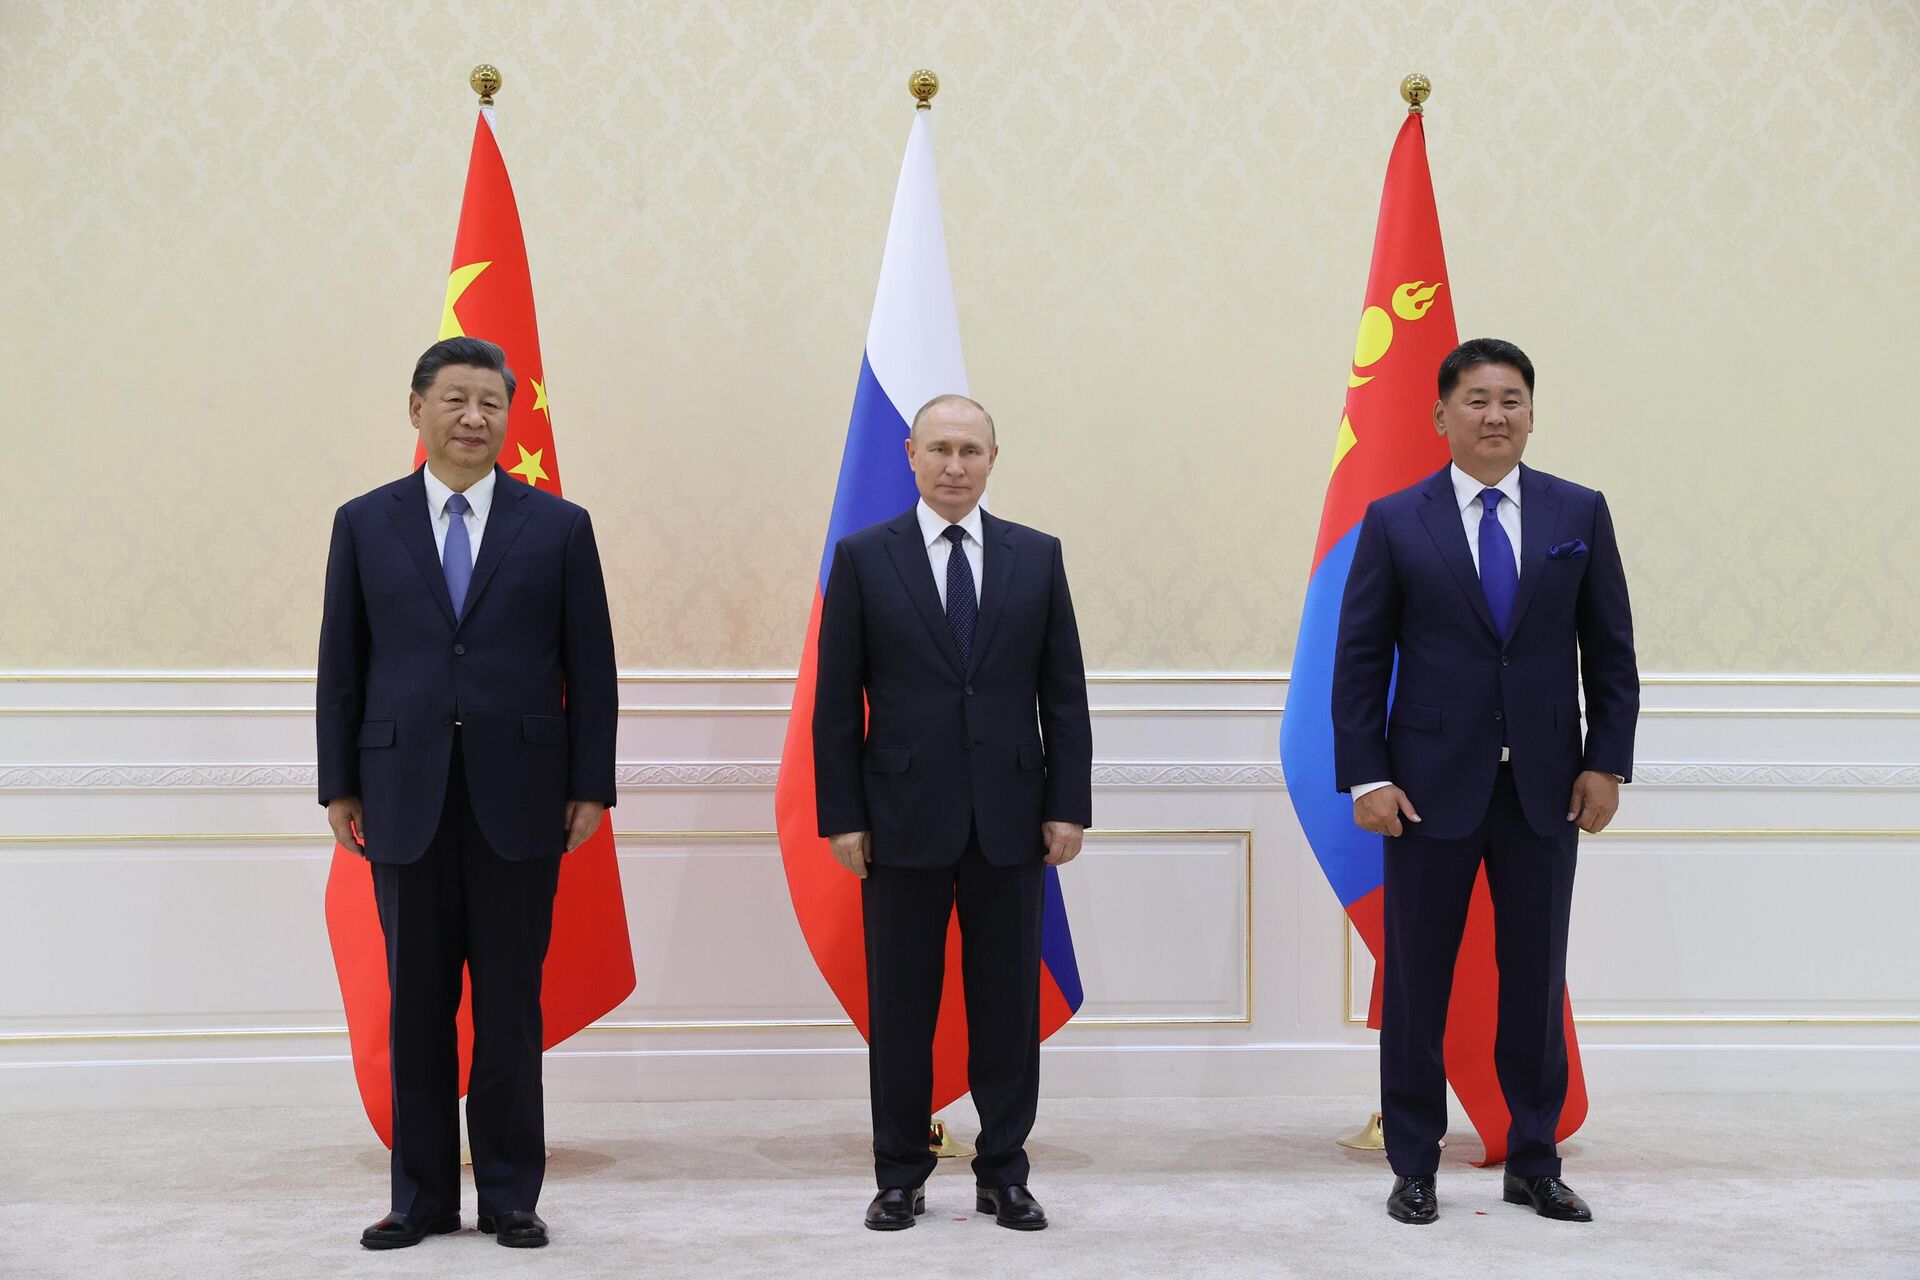 Ο Ρώσος Πρόεδρος Βλαντιμίρ Πούτιν, ο Κινέζος Πρόεδρος Xi Jinping και ο Μογγολικός Πρόεδρος Ukhnaagiin Khurelsukh κατά τη διάρκεια τριμερούς συνάντησης στο περιθώριο της συνόδου κορυφής SCO - RIA Novosti, 1920, 16/09/2022